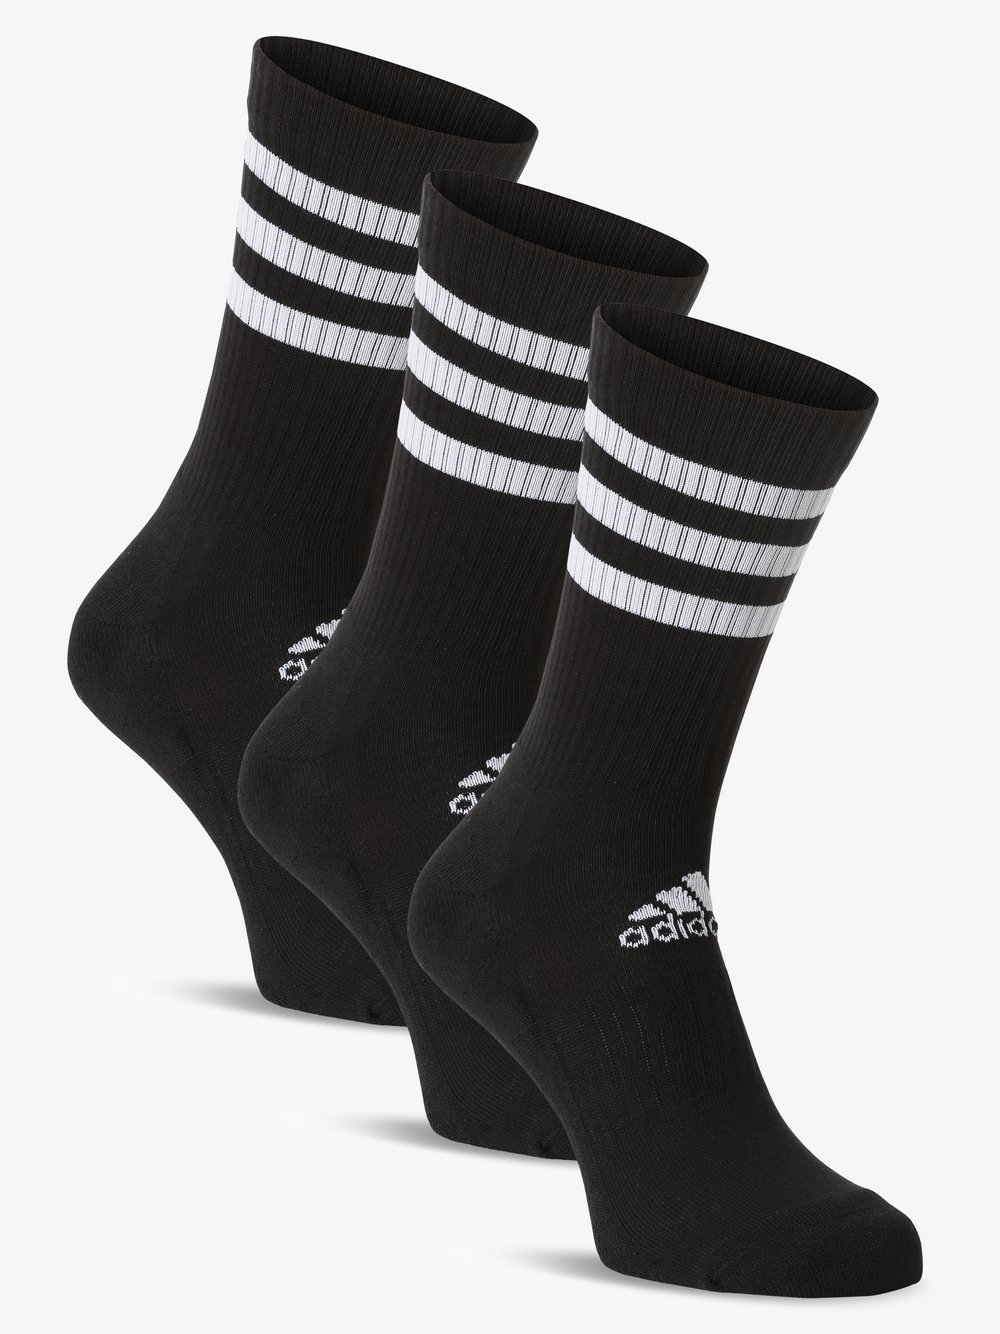 Adidas Originals - Skarpety damskie pakowane po 3 szt., czarny